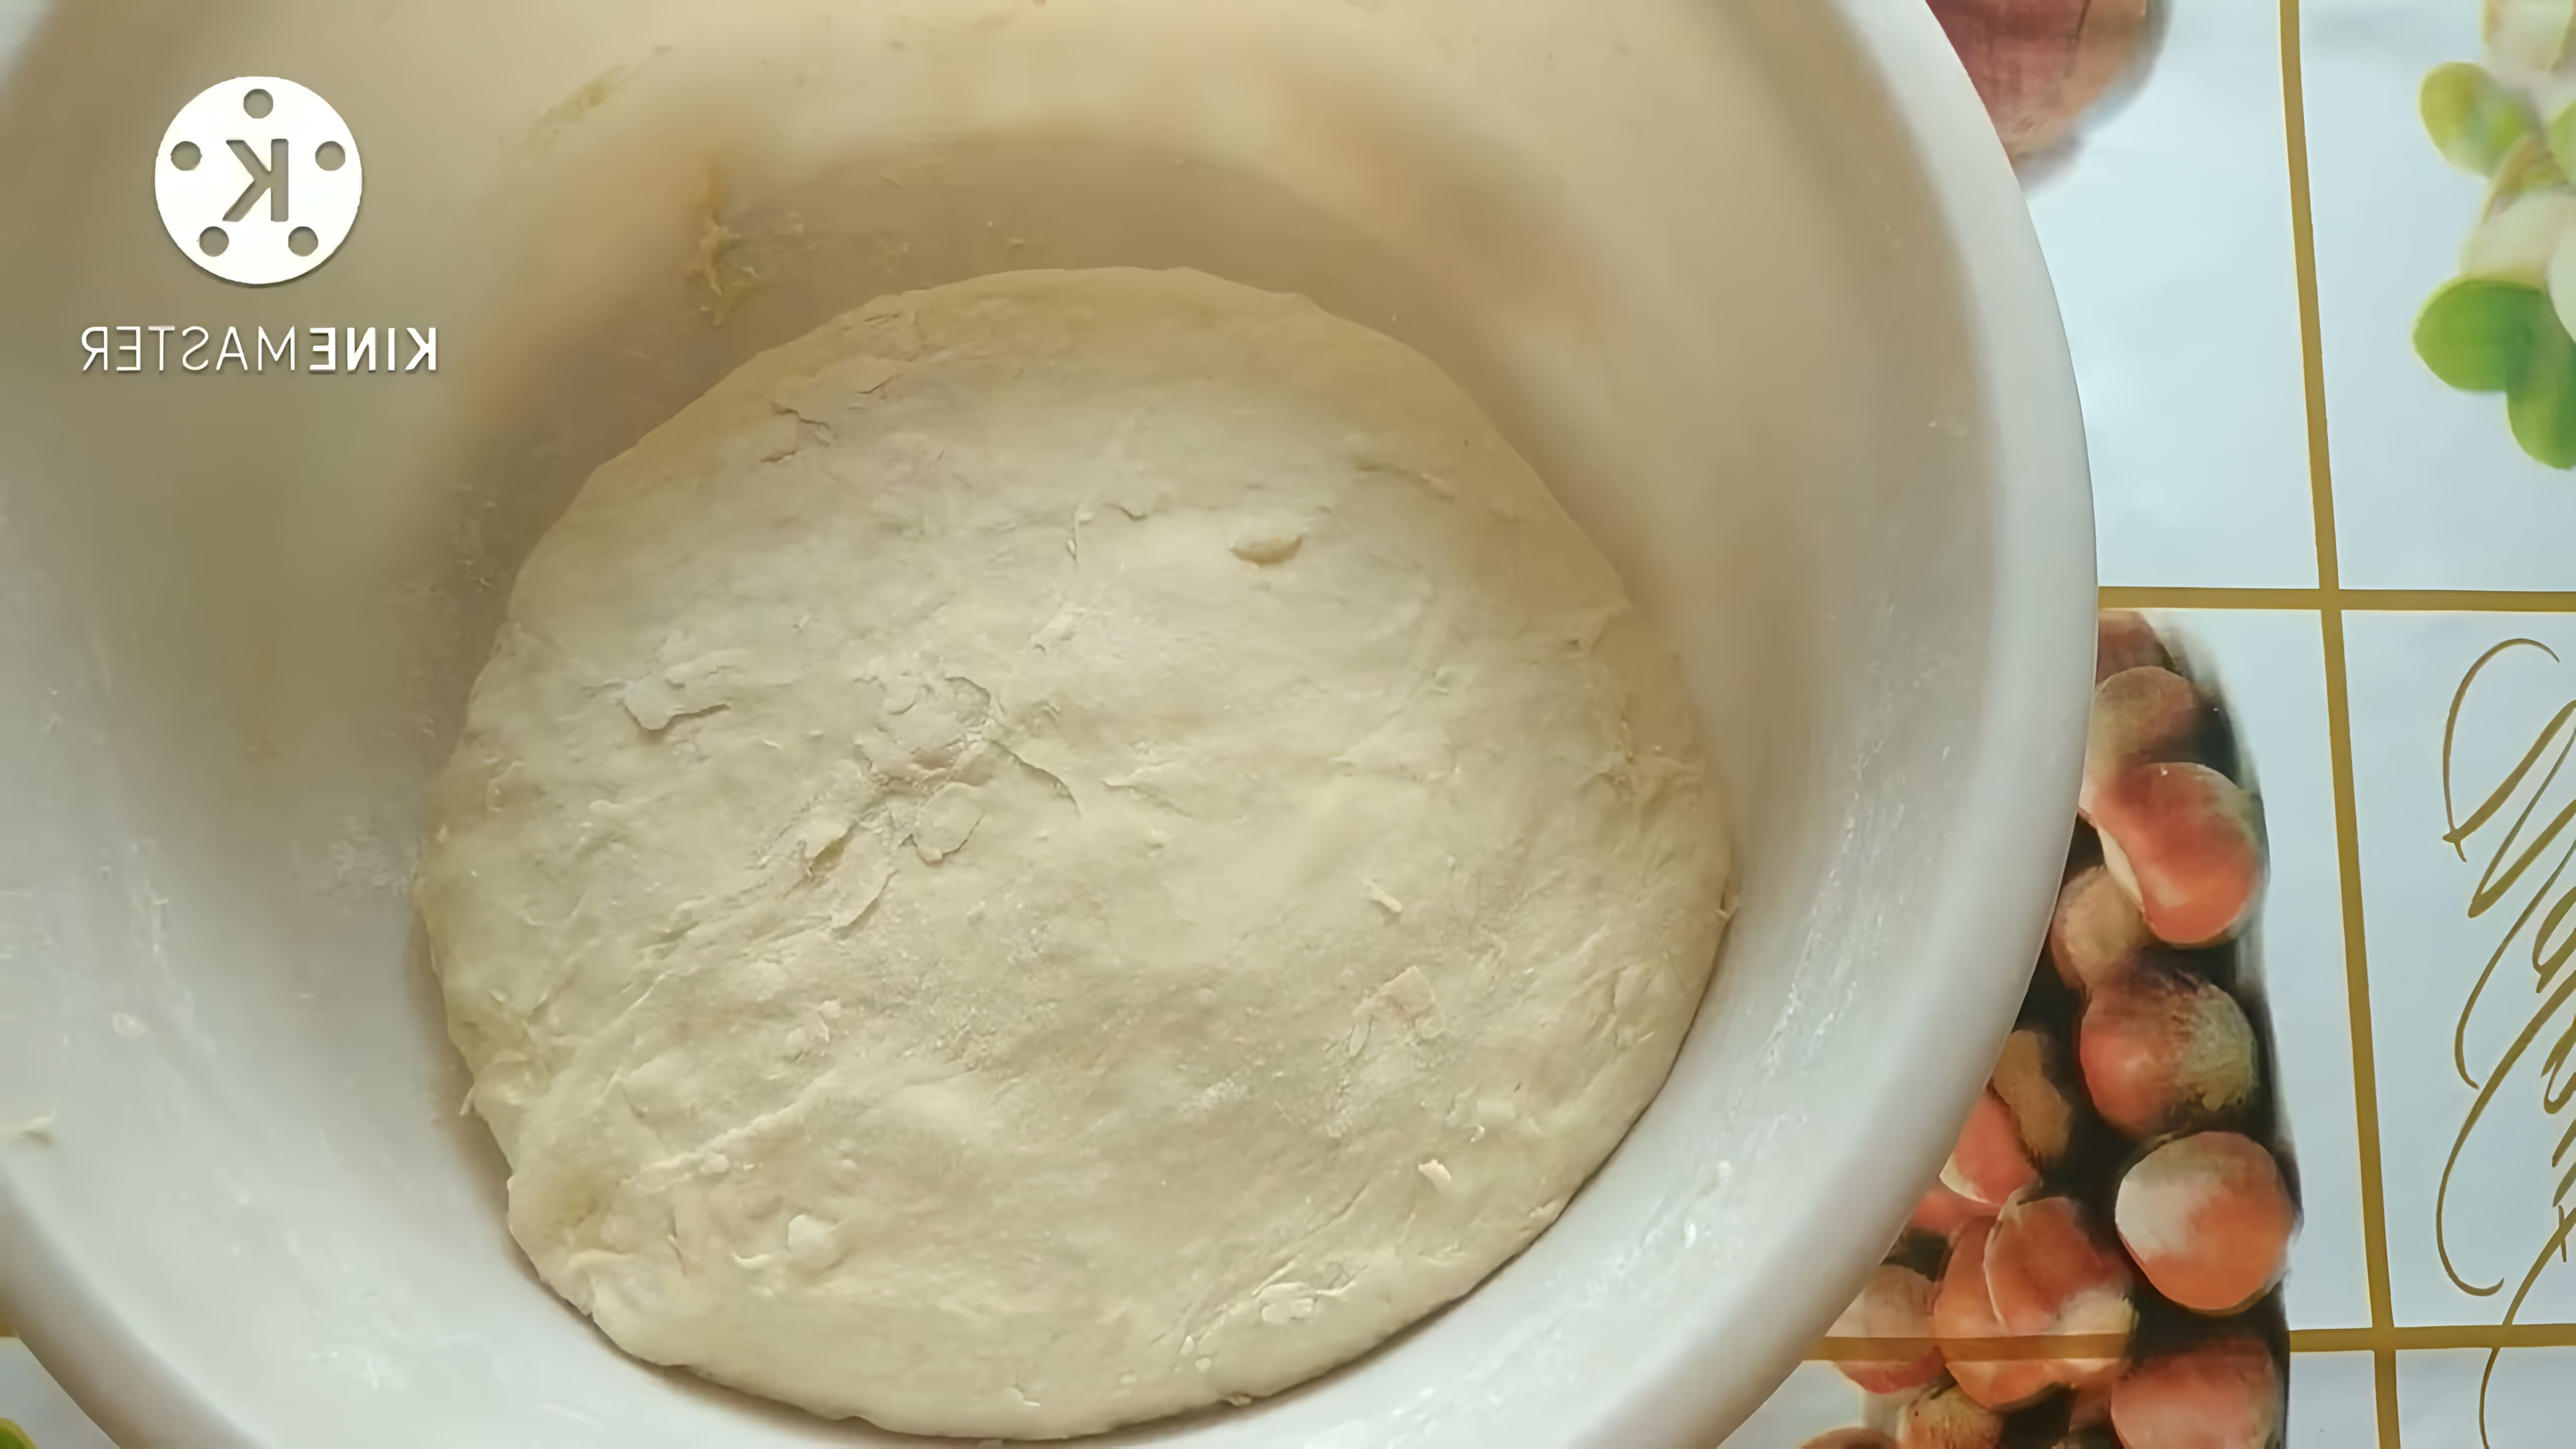 В этом видео демонстрируется рецепт приготовления японского хлеба "Хоккайдо"